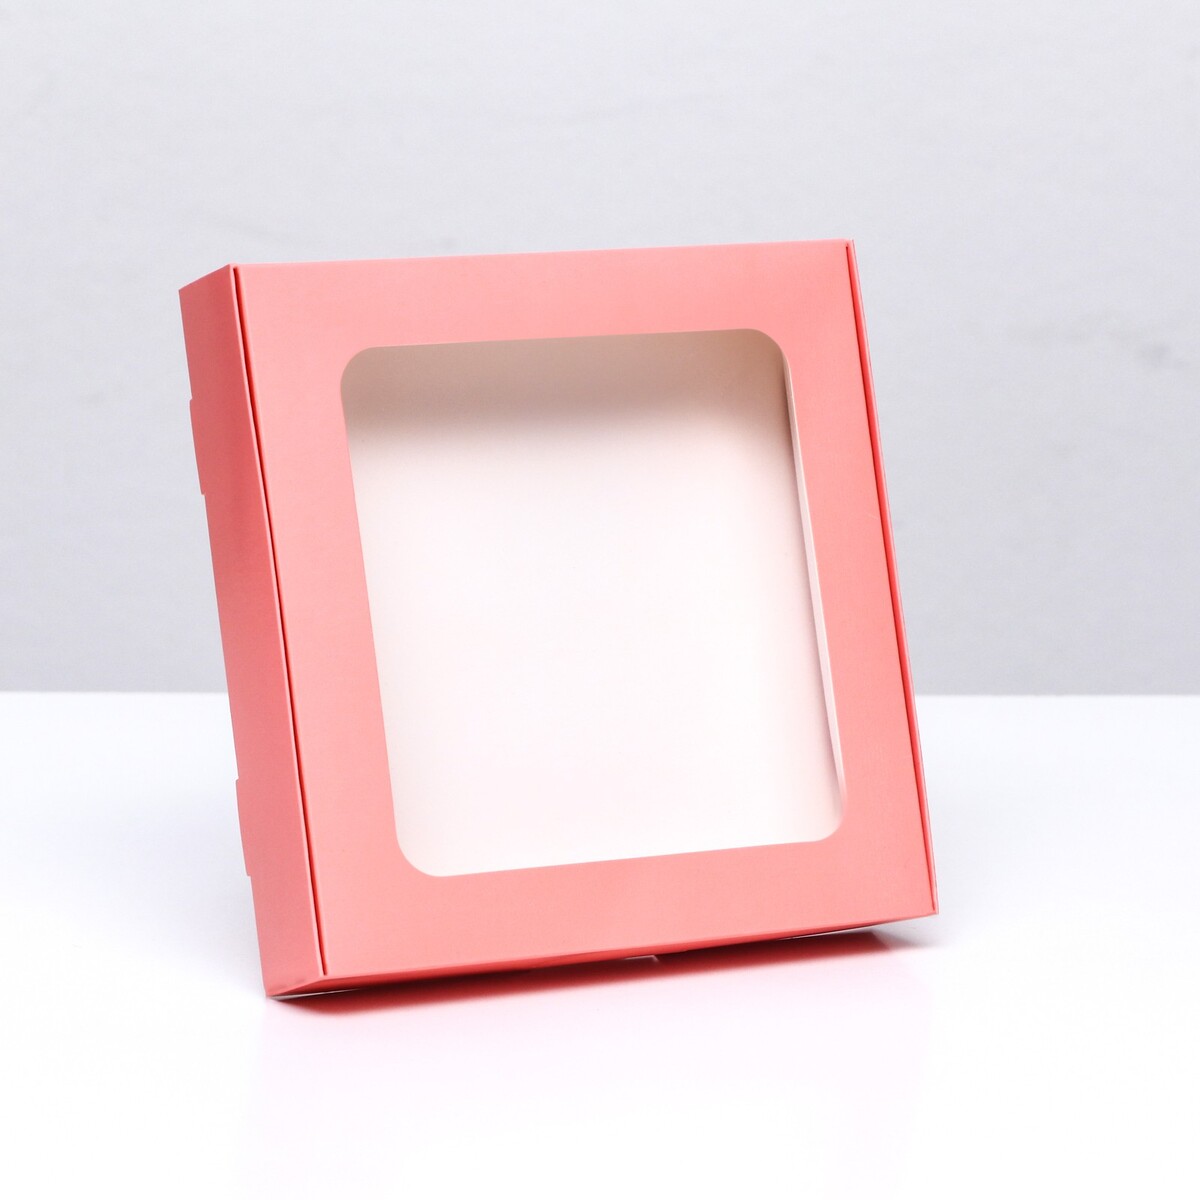 Коробка самосборная с окном розовая, 16 х 16 х 3 см коробка самосборная с окном розовая 16 х 16 х 3 см